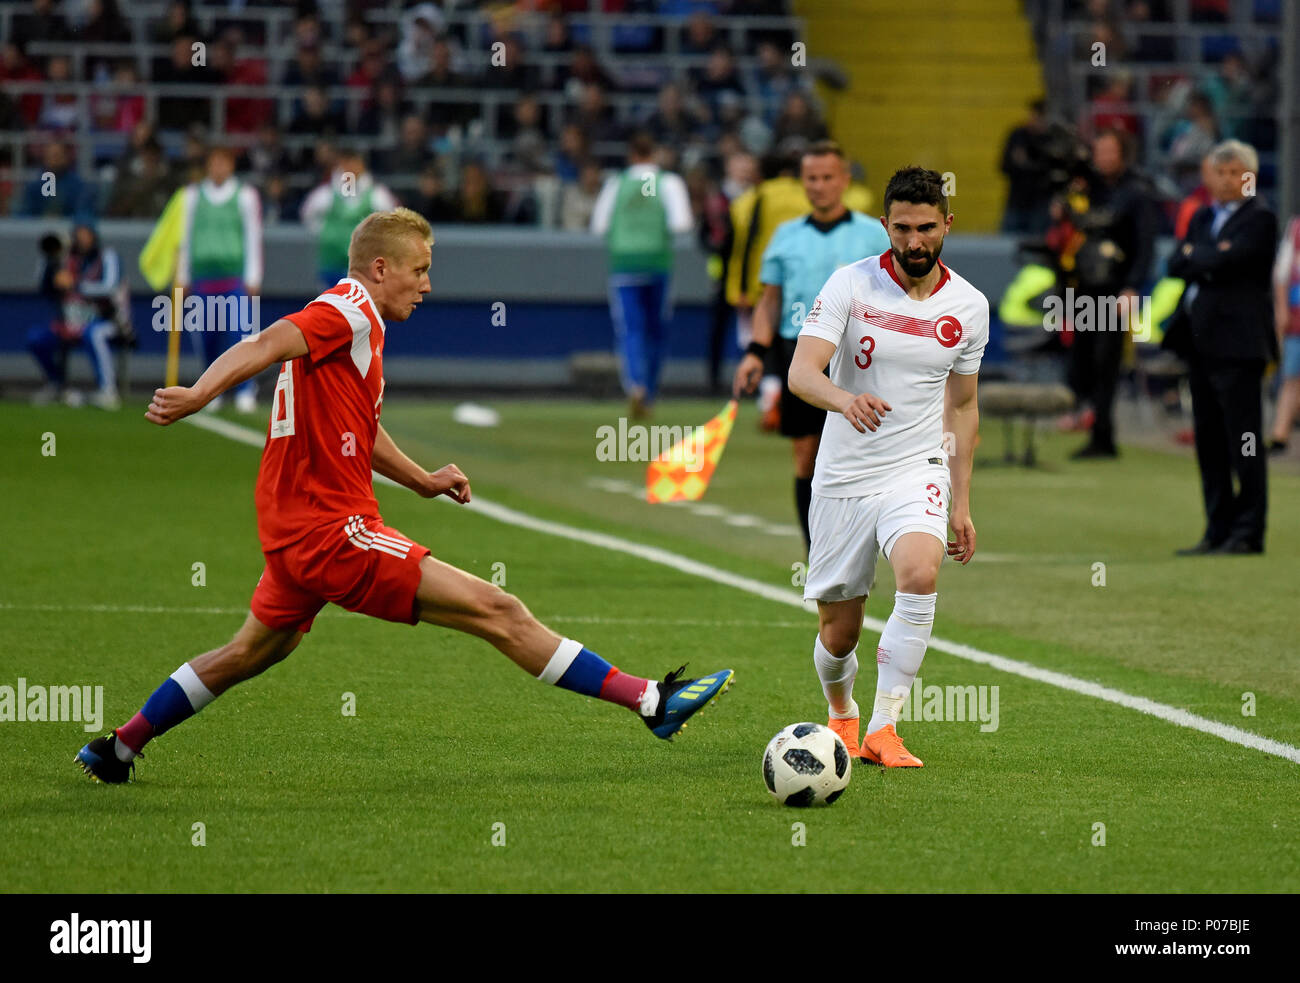 Moscou, Russie - le 5 juin 2018. Le défenseur russe Igor Smolnikov contre le Turc wingback Hasan Ali Kaldirimduring match amical contre la Russie Banque D'Images